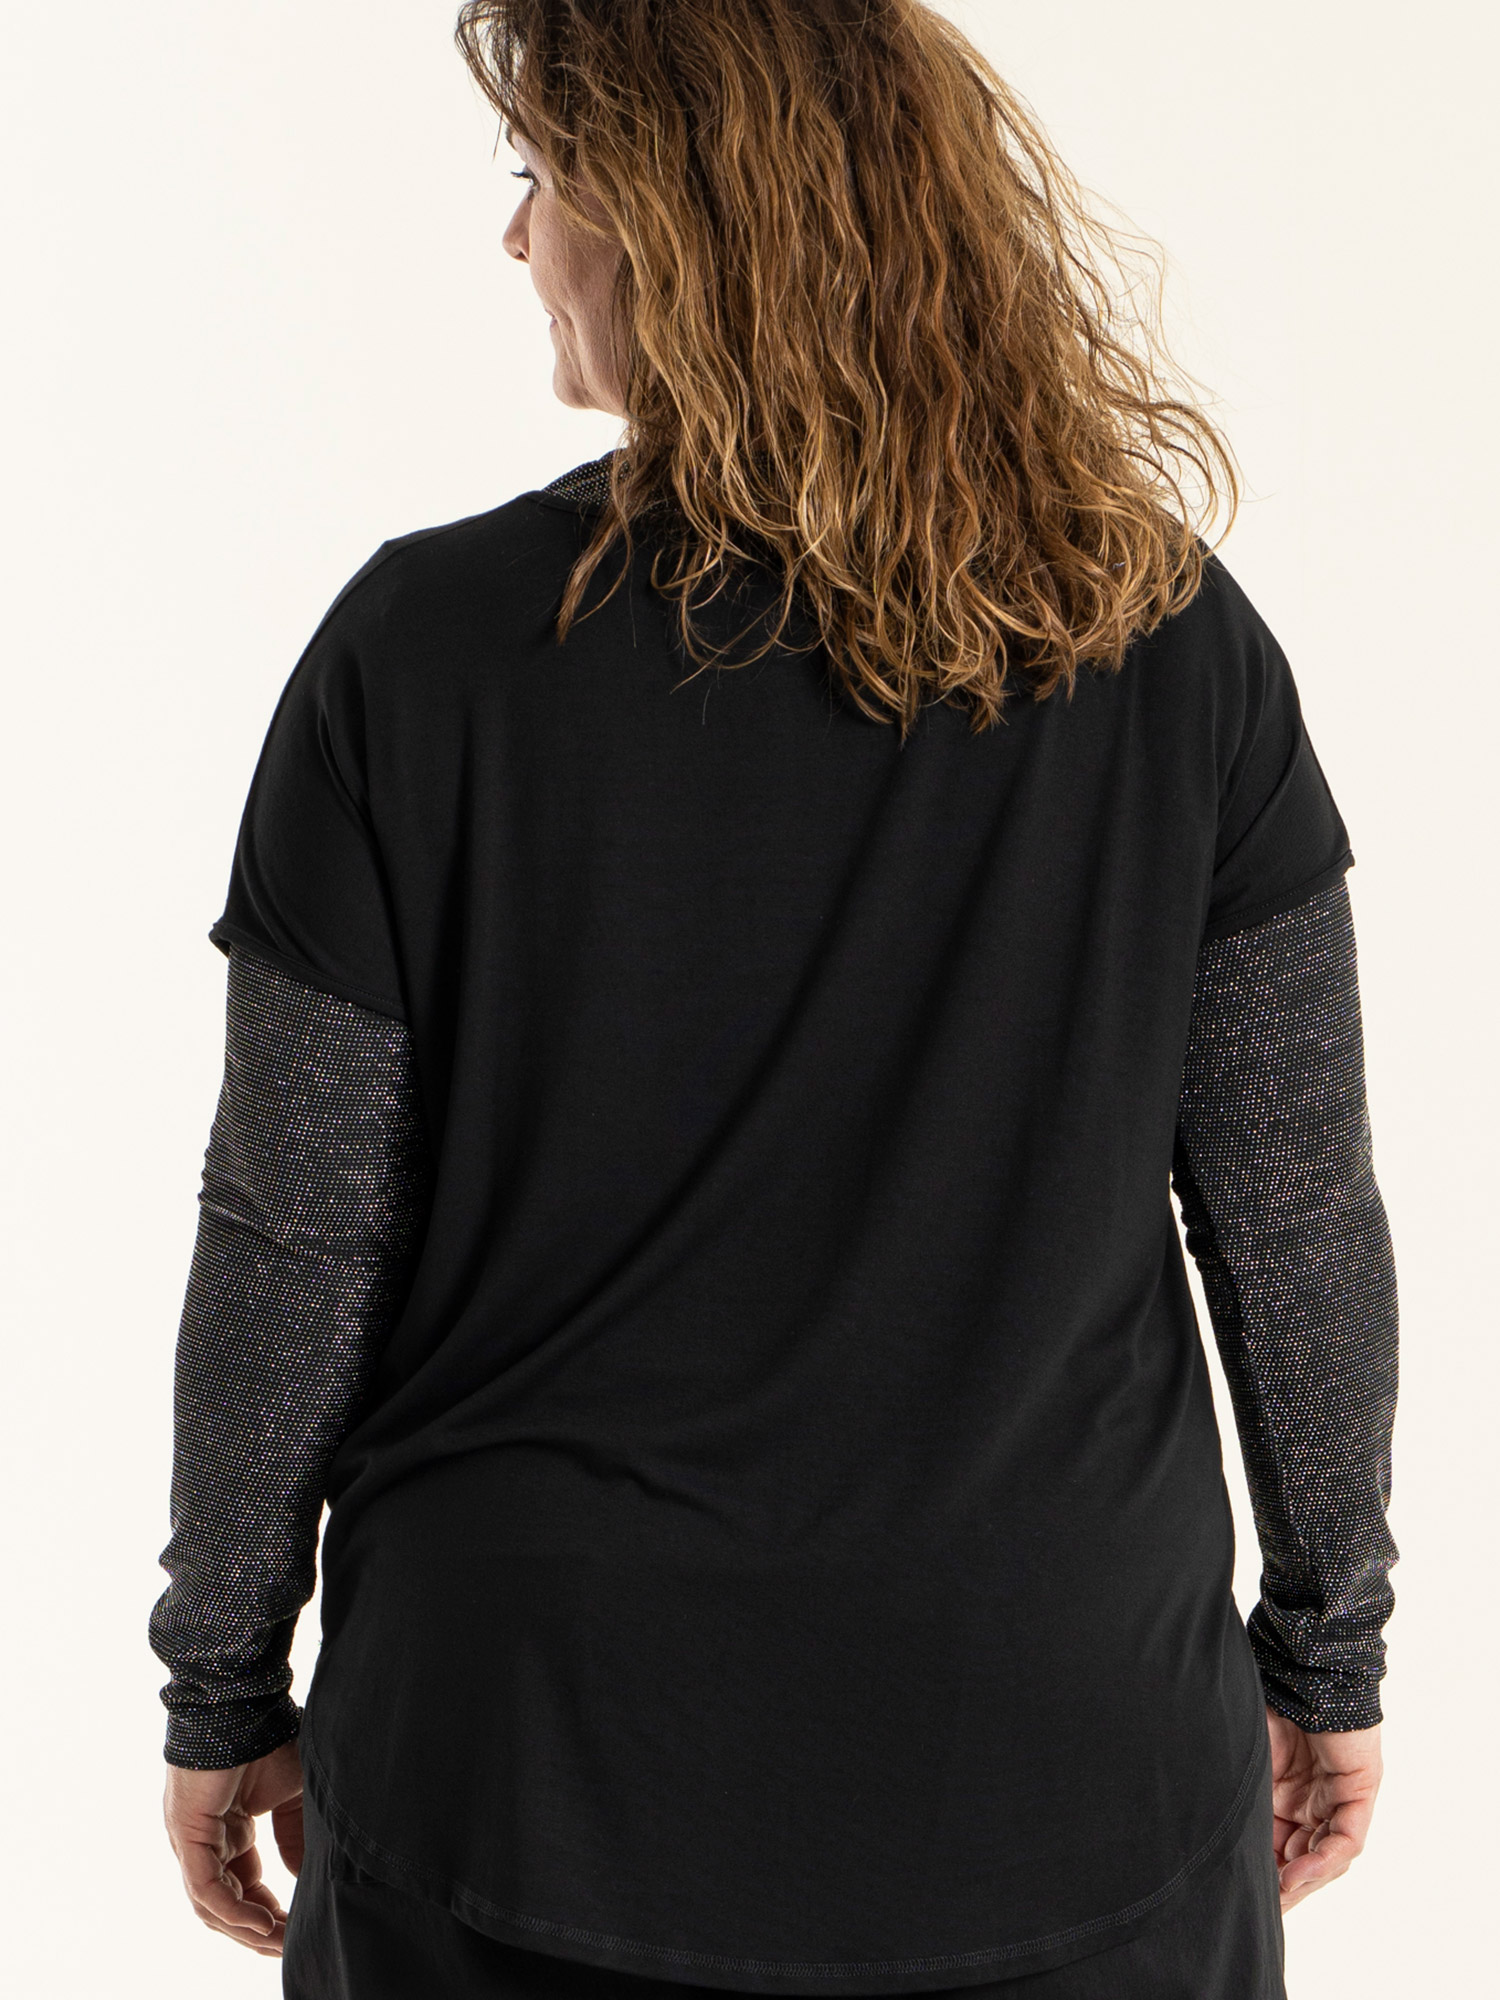 JOLANTA - Kraftig sort mesh bluse med sølv glimmer fra Gozzip